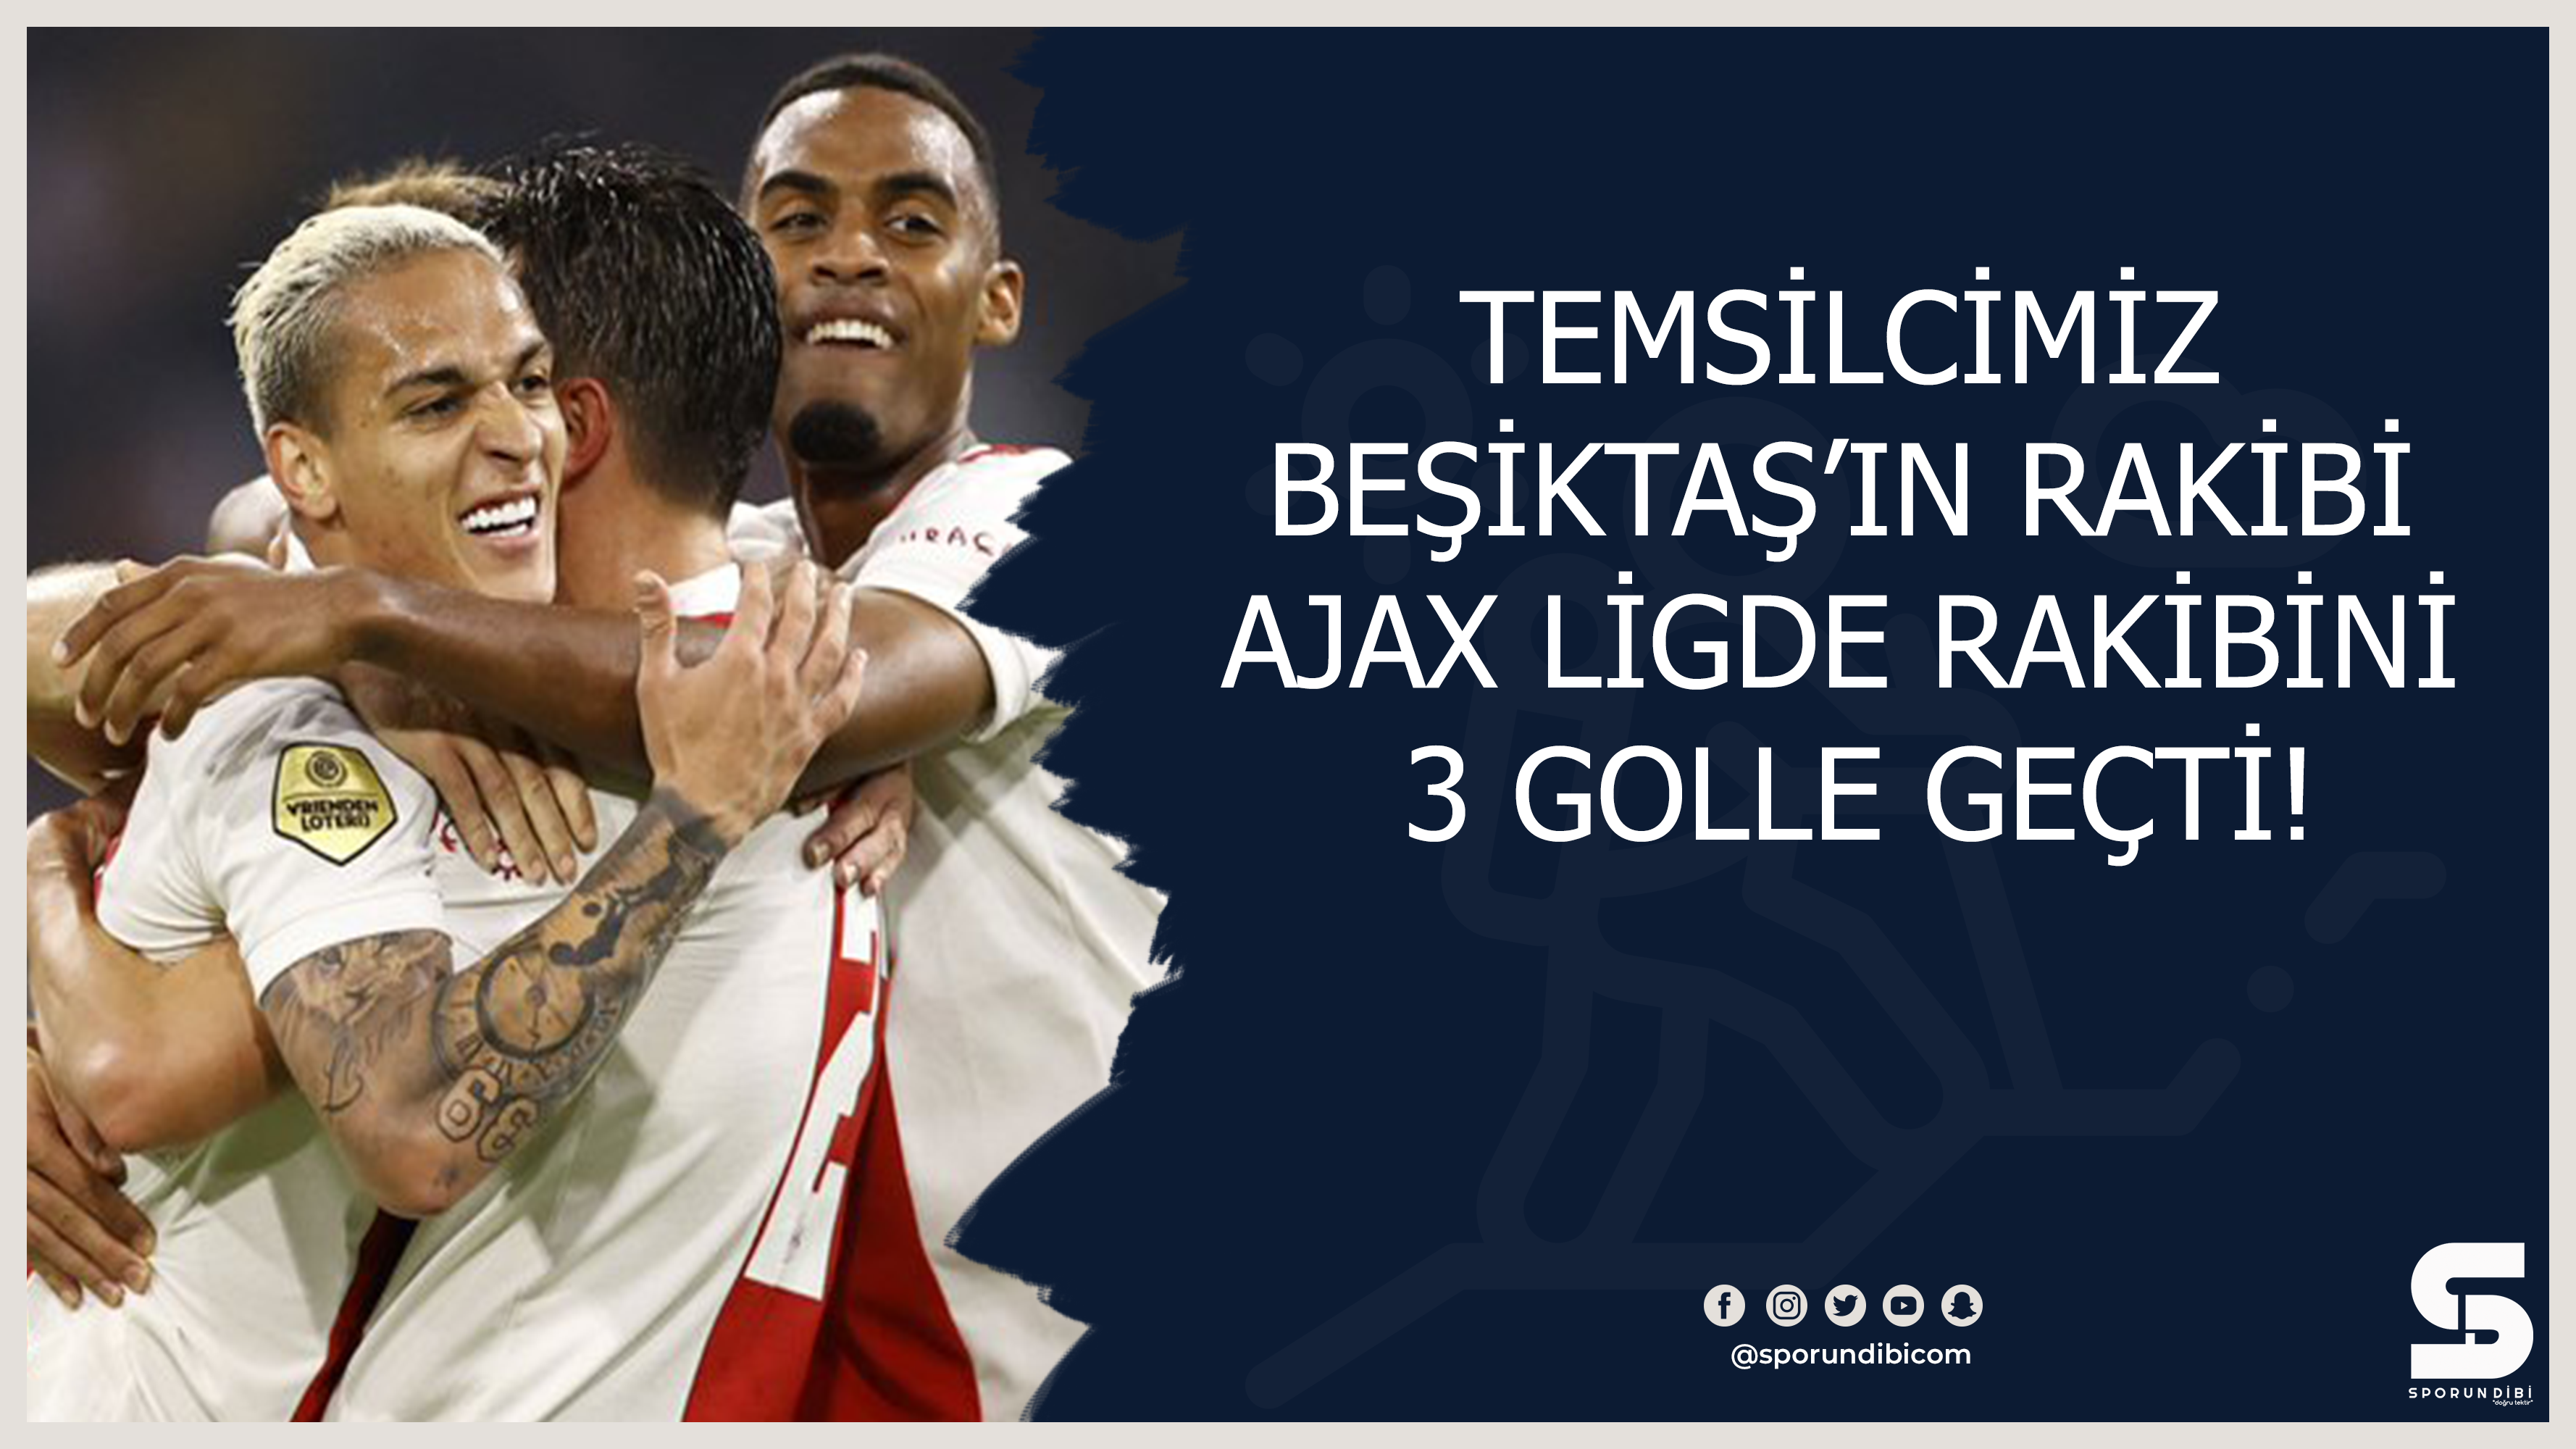 Temsilcimiz Beşiktaş'ın rakibi Ajax ligde rakibini 3 golle geçti!